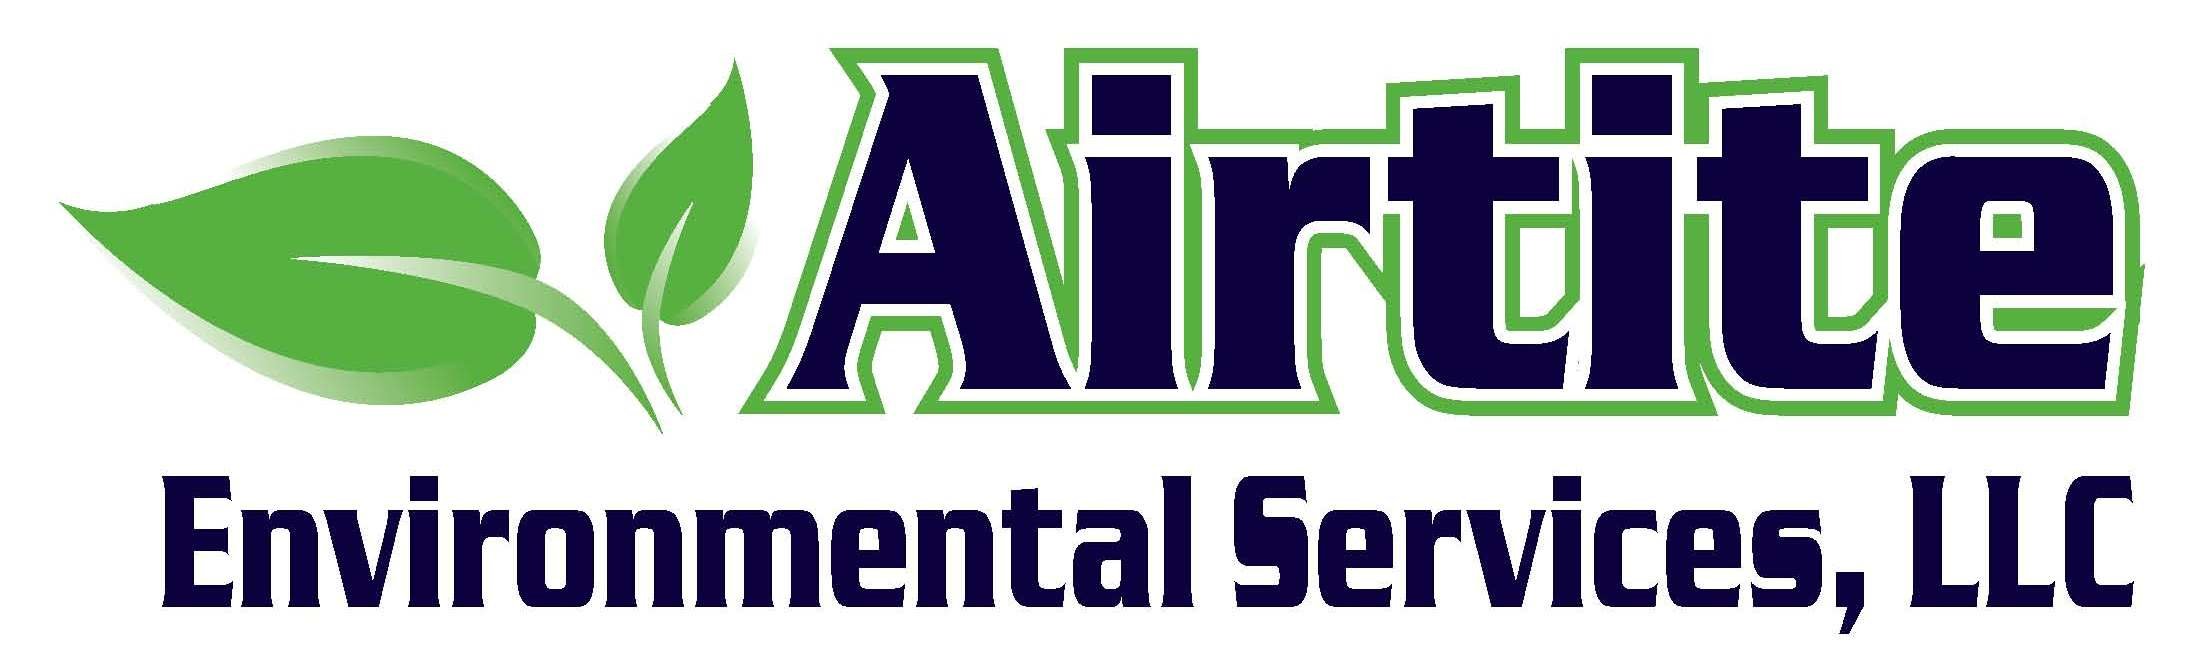 Airtite Environmental Services, LLC Logo